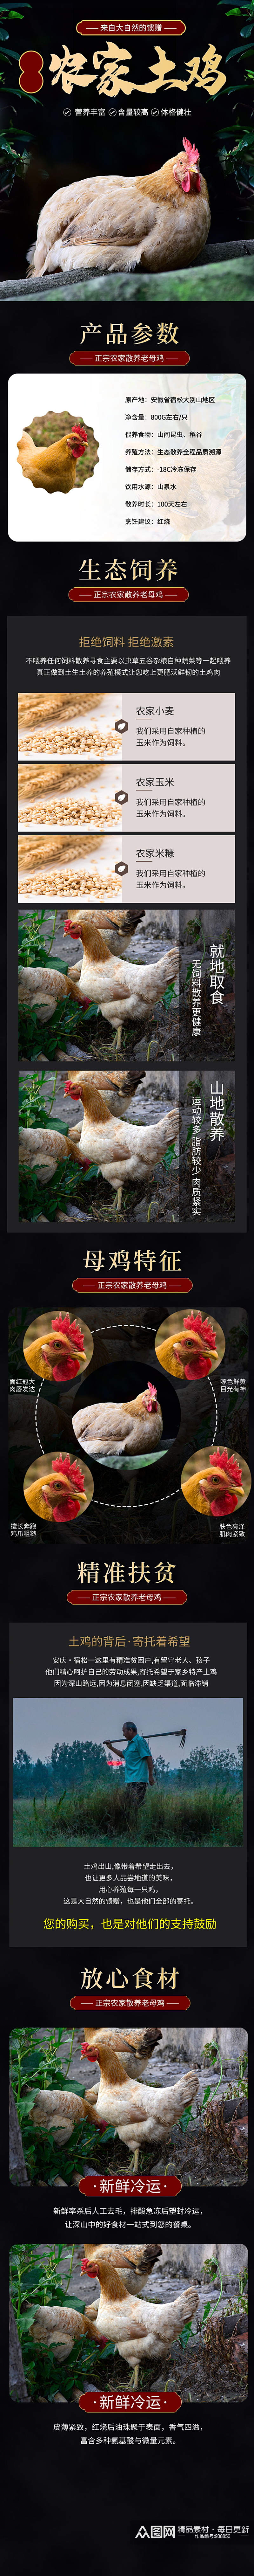 中国风风格农家土鸡母鸡详情页素材